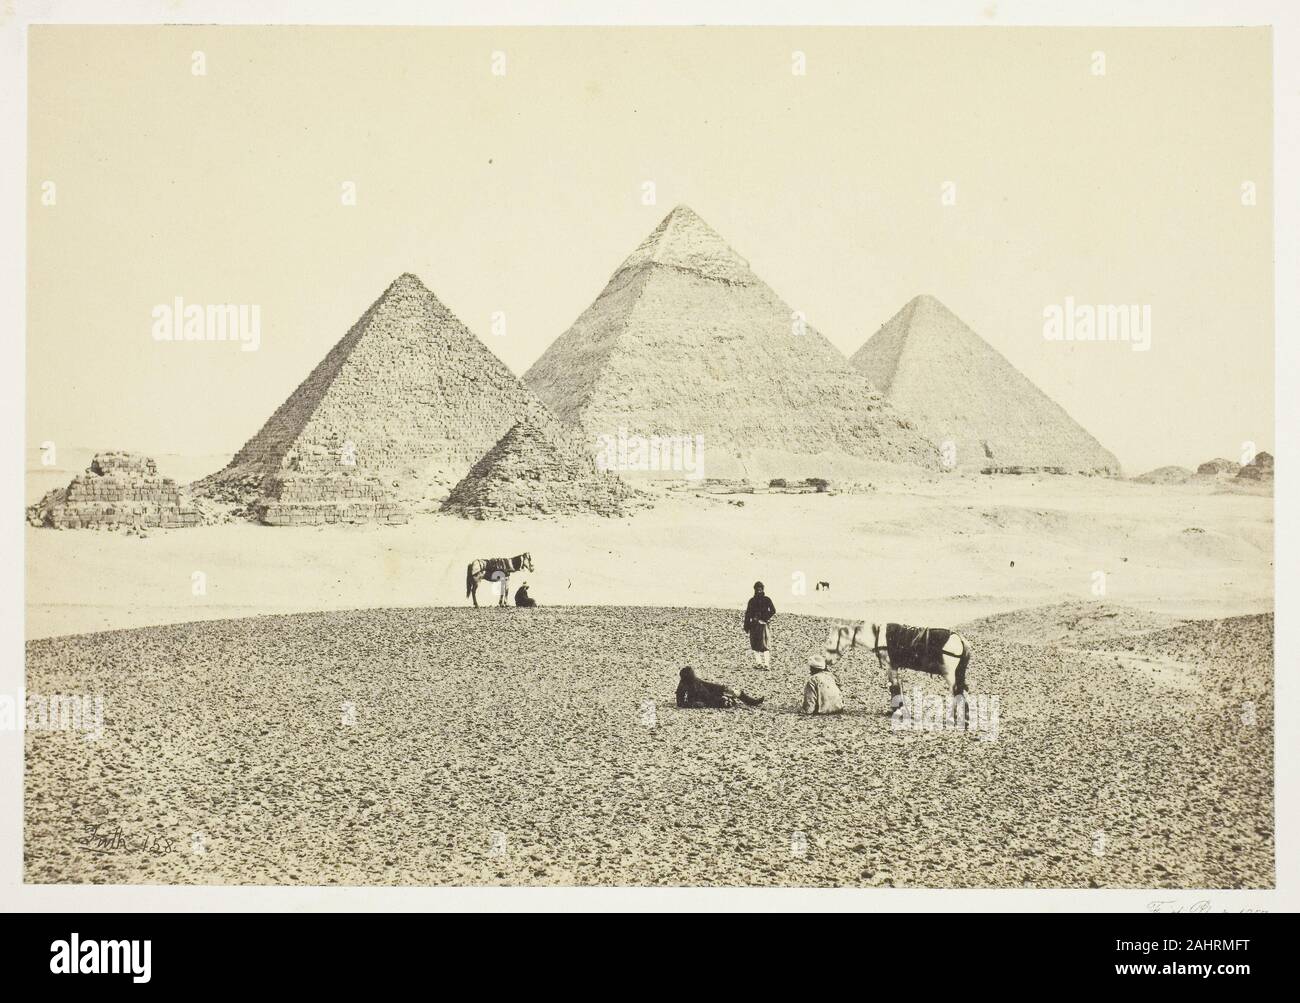 Francis Frith. Die Pyramiden von El Geezeh, aus dem Südwesten. 1857. England. Eiweiß drucken Stockfoto